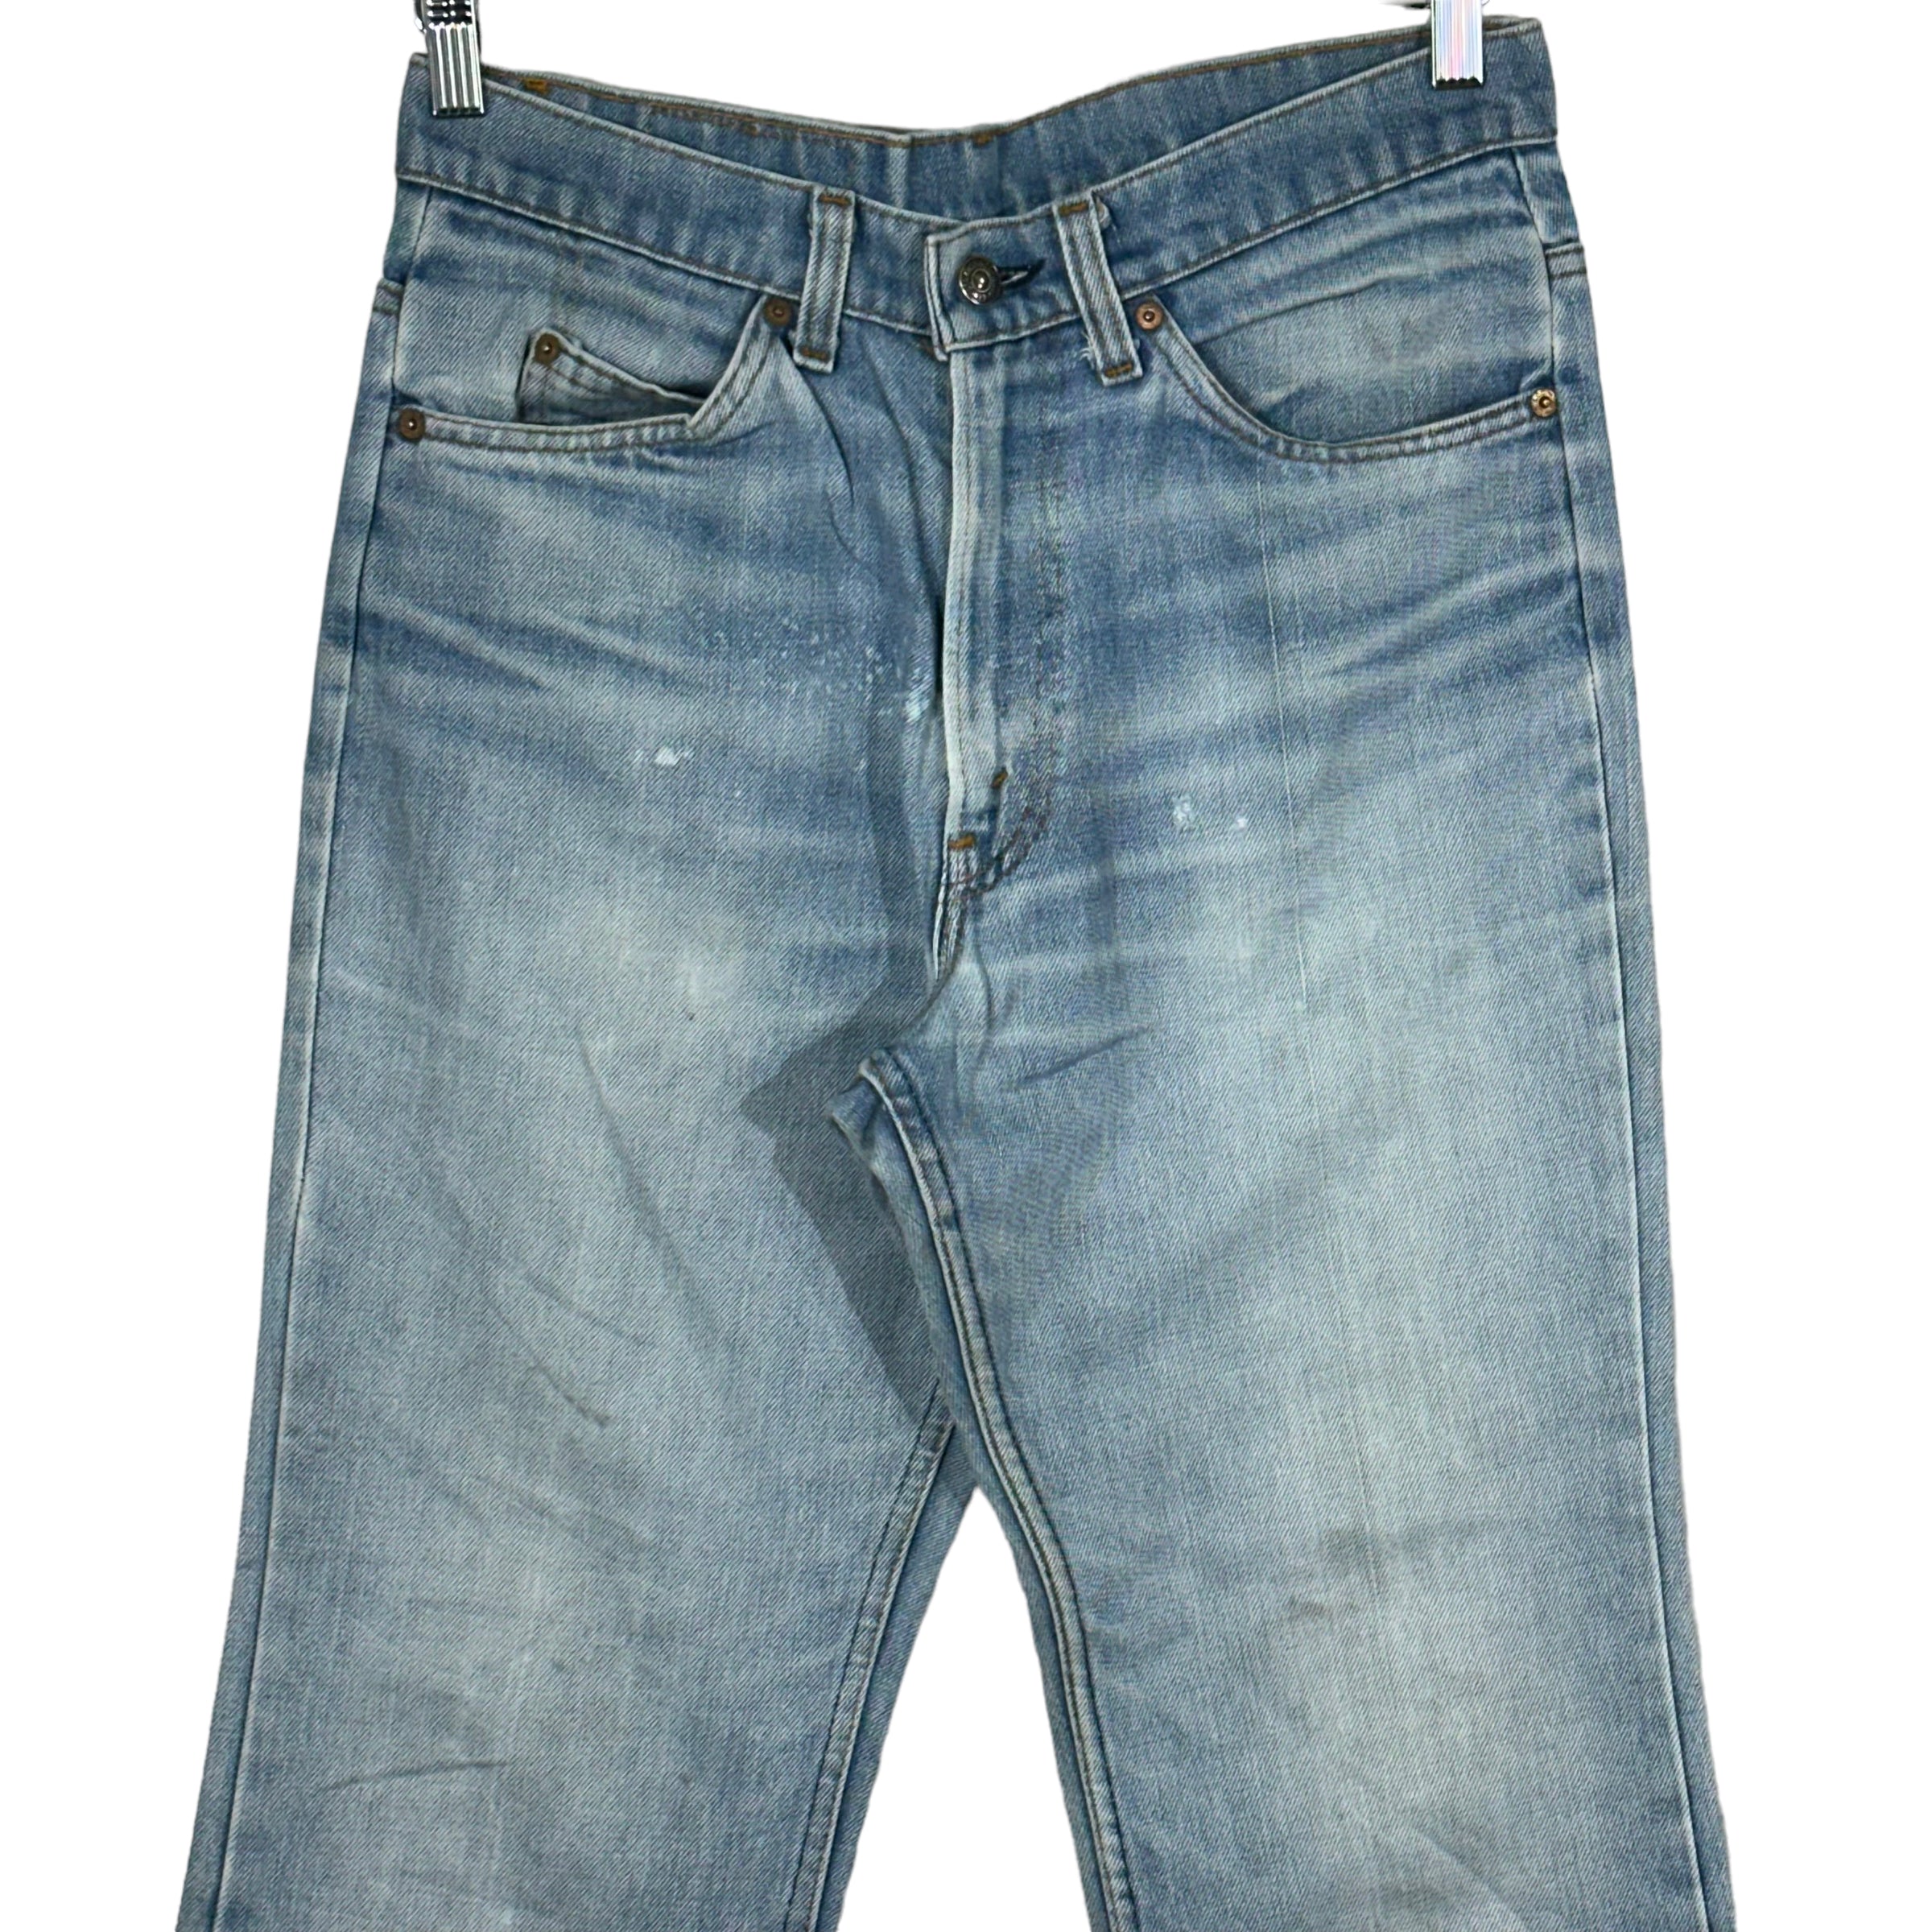 Vintage Levi's Denim Jeans 90s